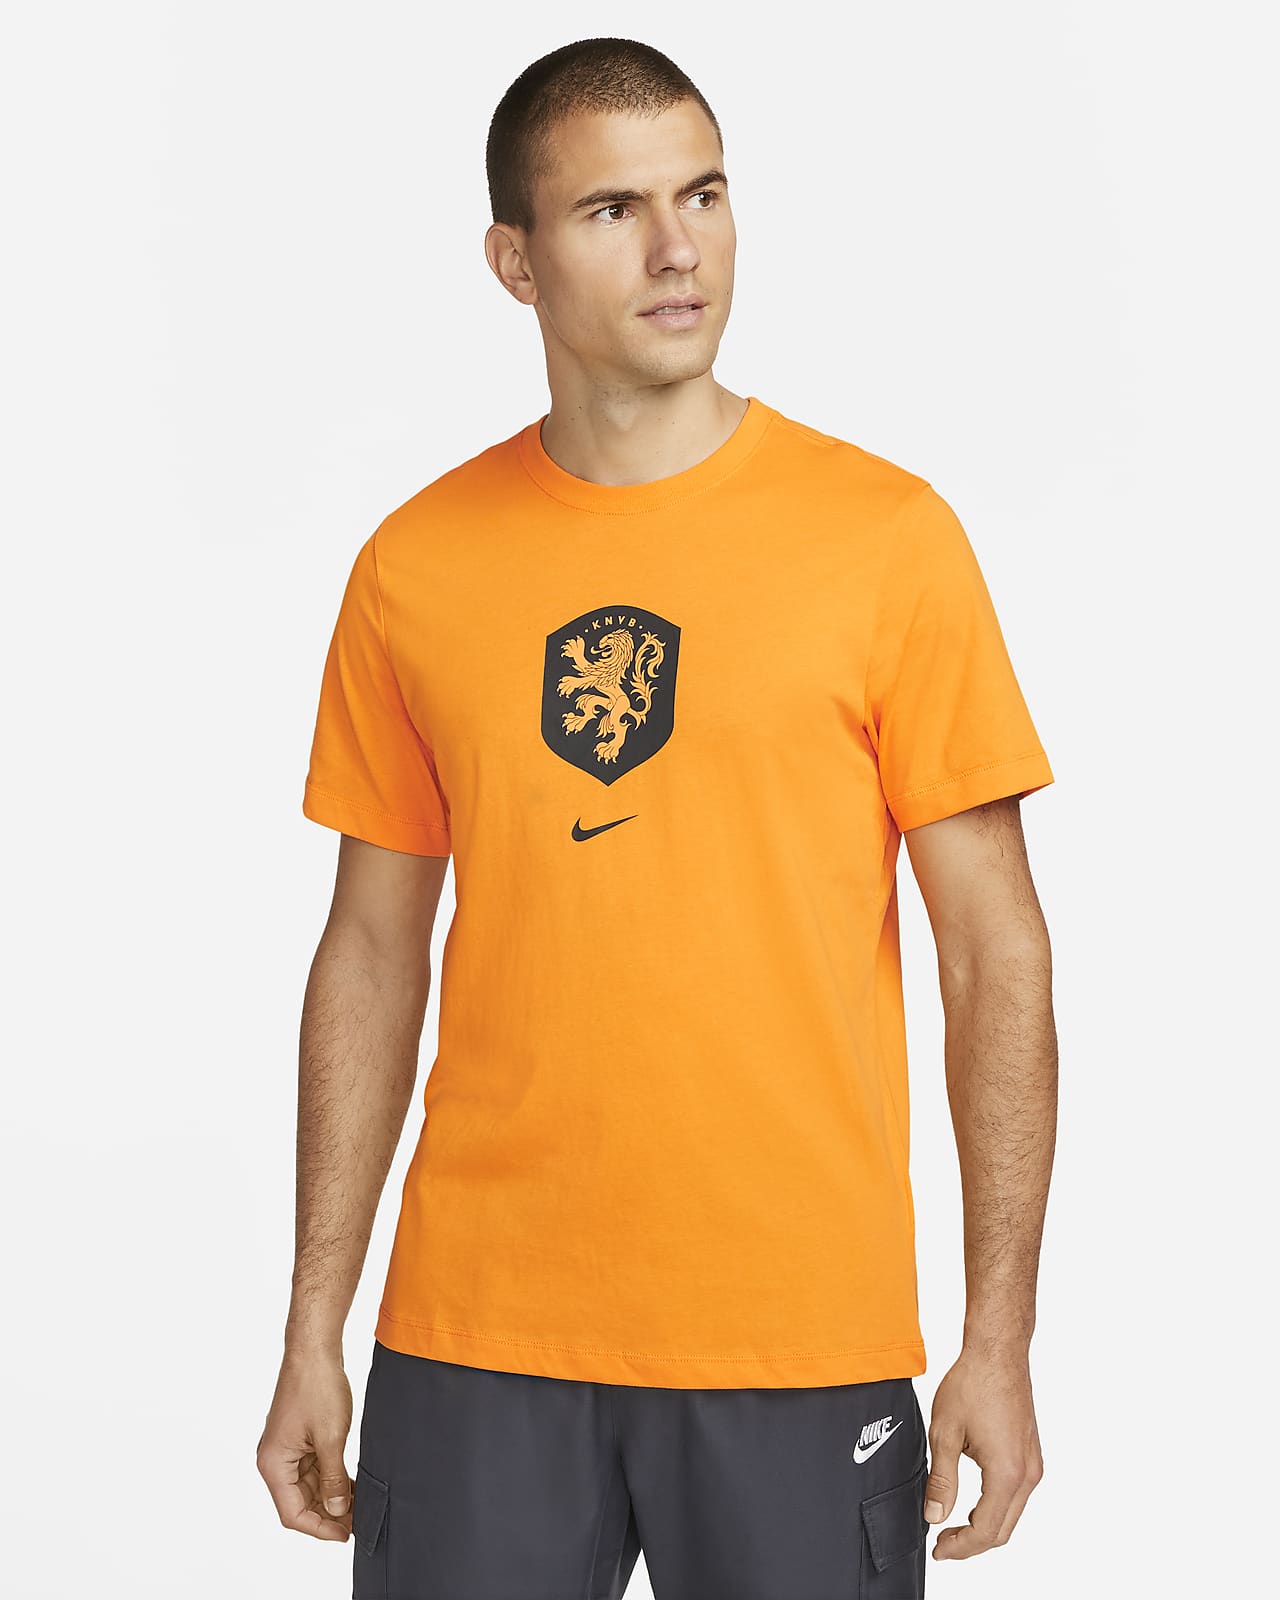 Avonturier mogelijkheid kleding Netherlands Men's Nike T-Shirt. Nike.com